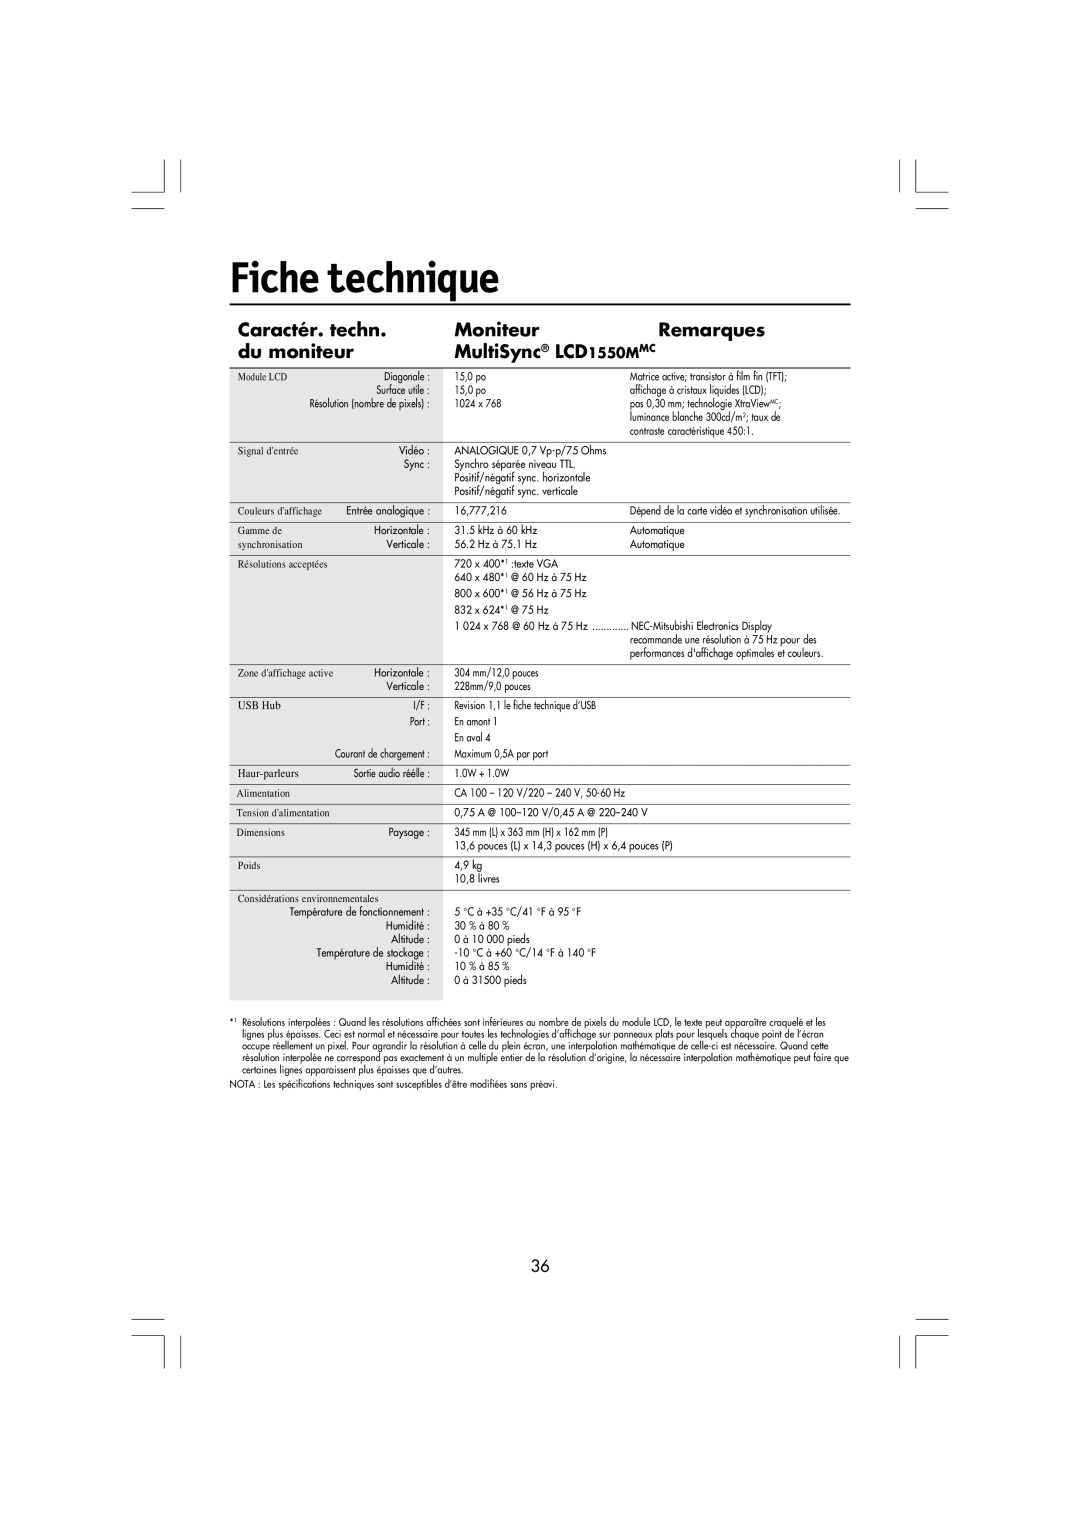 NEC LA-15R03-BK manual Fiche technique, Caractér. techn, Moniteur, Remarques, du moniteur, MultiSync LCD1550MMC 